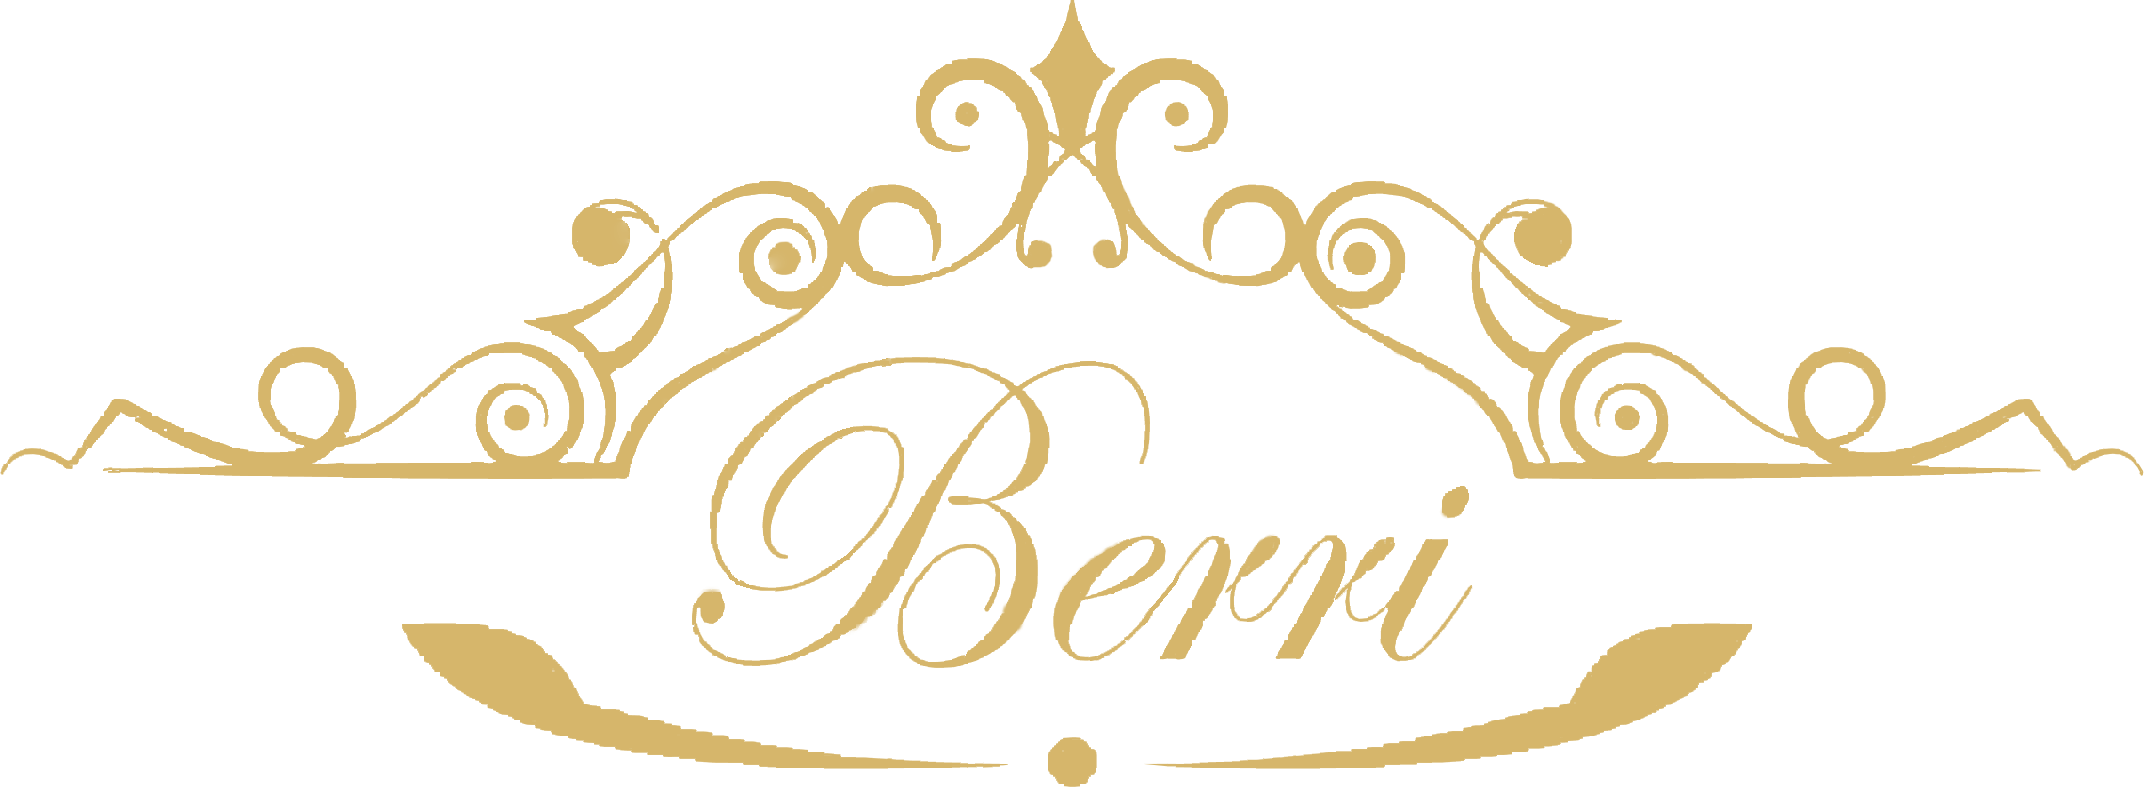 berri_logo